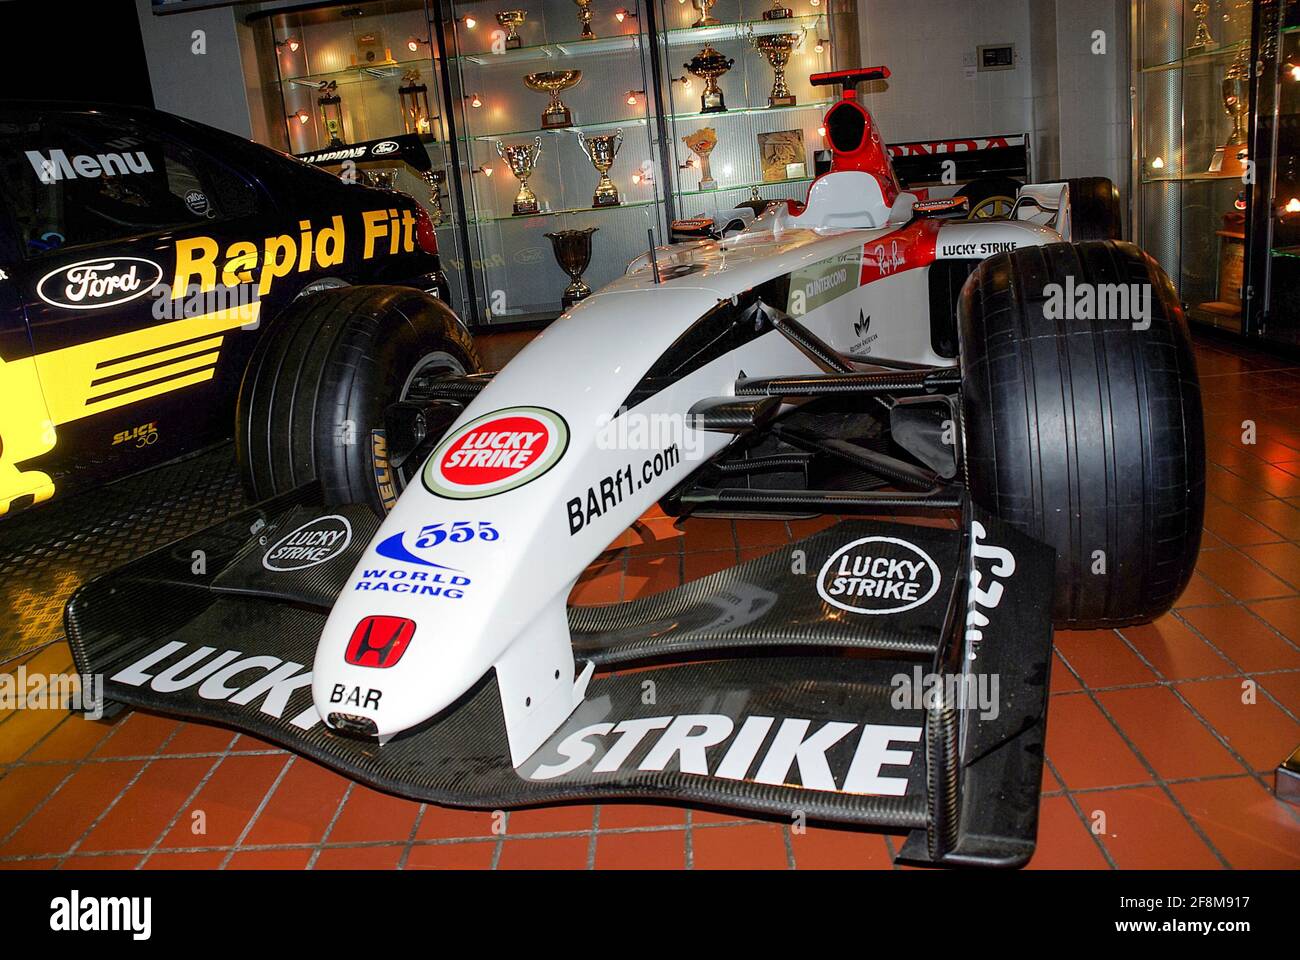 British American Racing, BAR 006, voiture de course du Grand Prix de F1 à l'intérieur du siège de ProDrive Motorsport à Banbury, Oxfordshire, Royaume-Uni. Banque D'Images